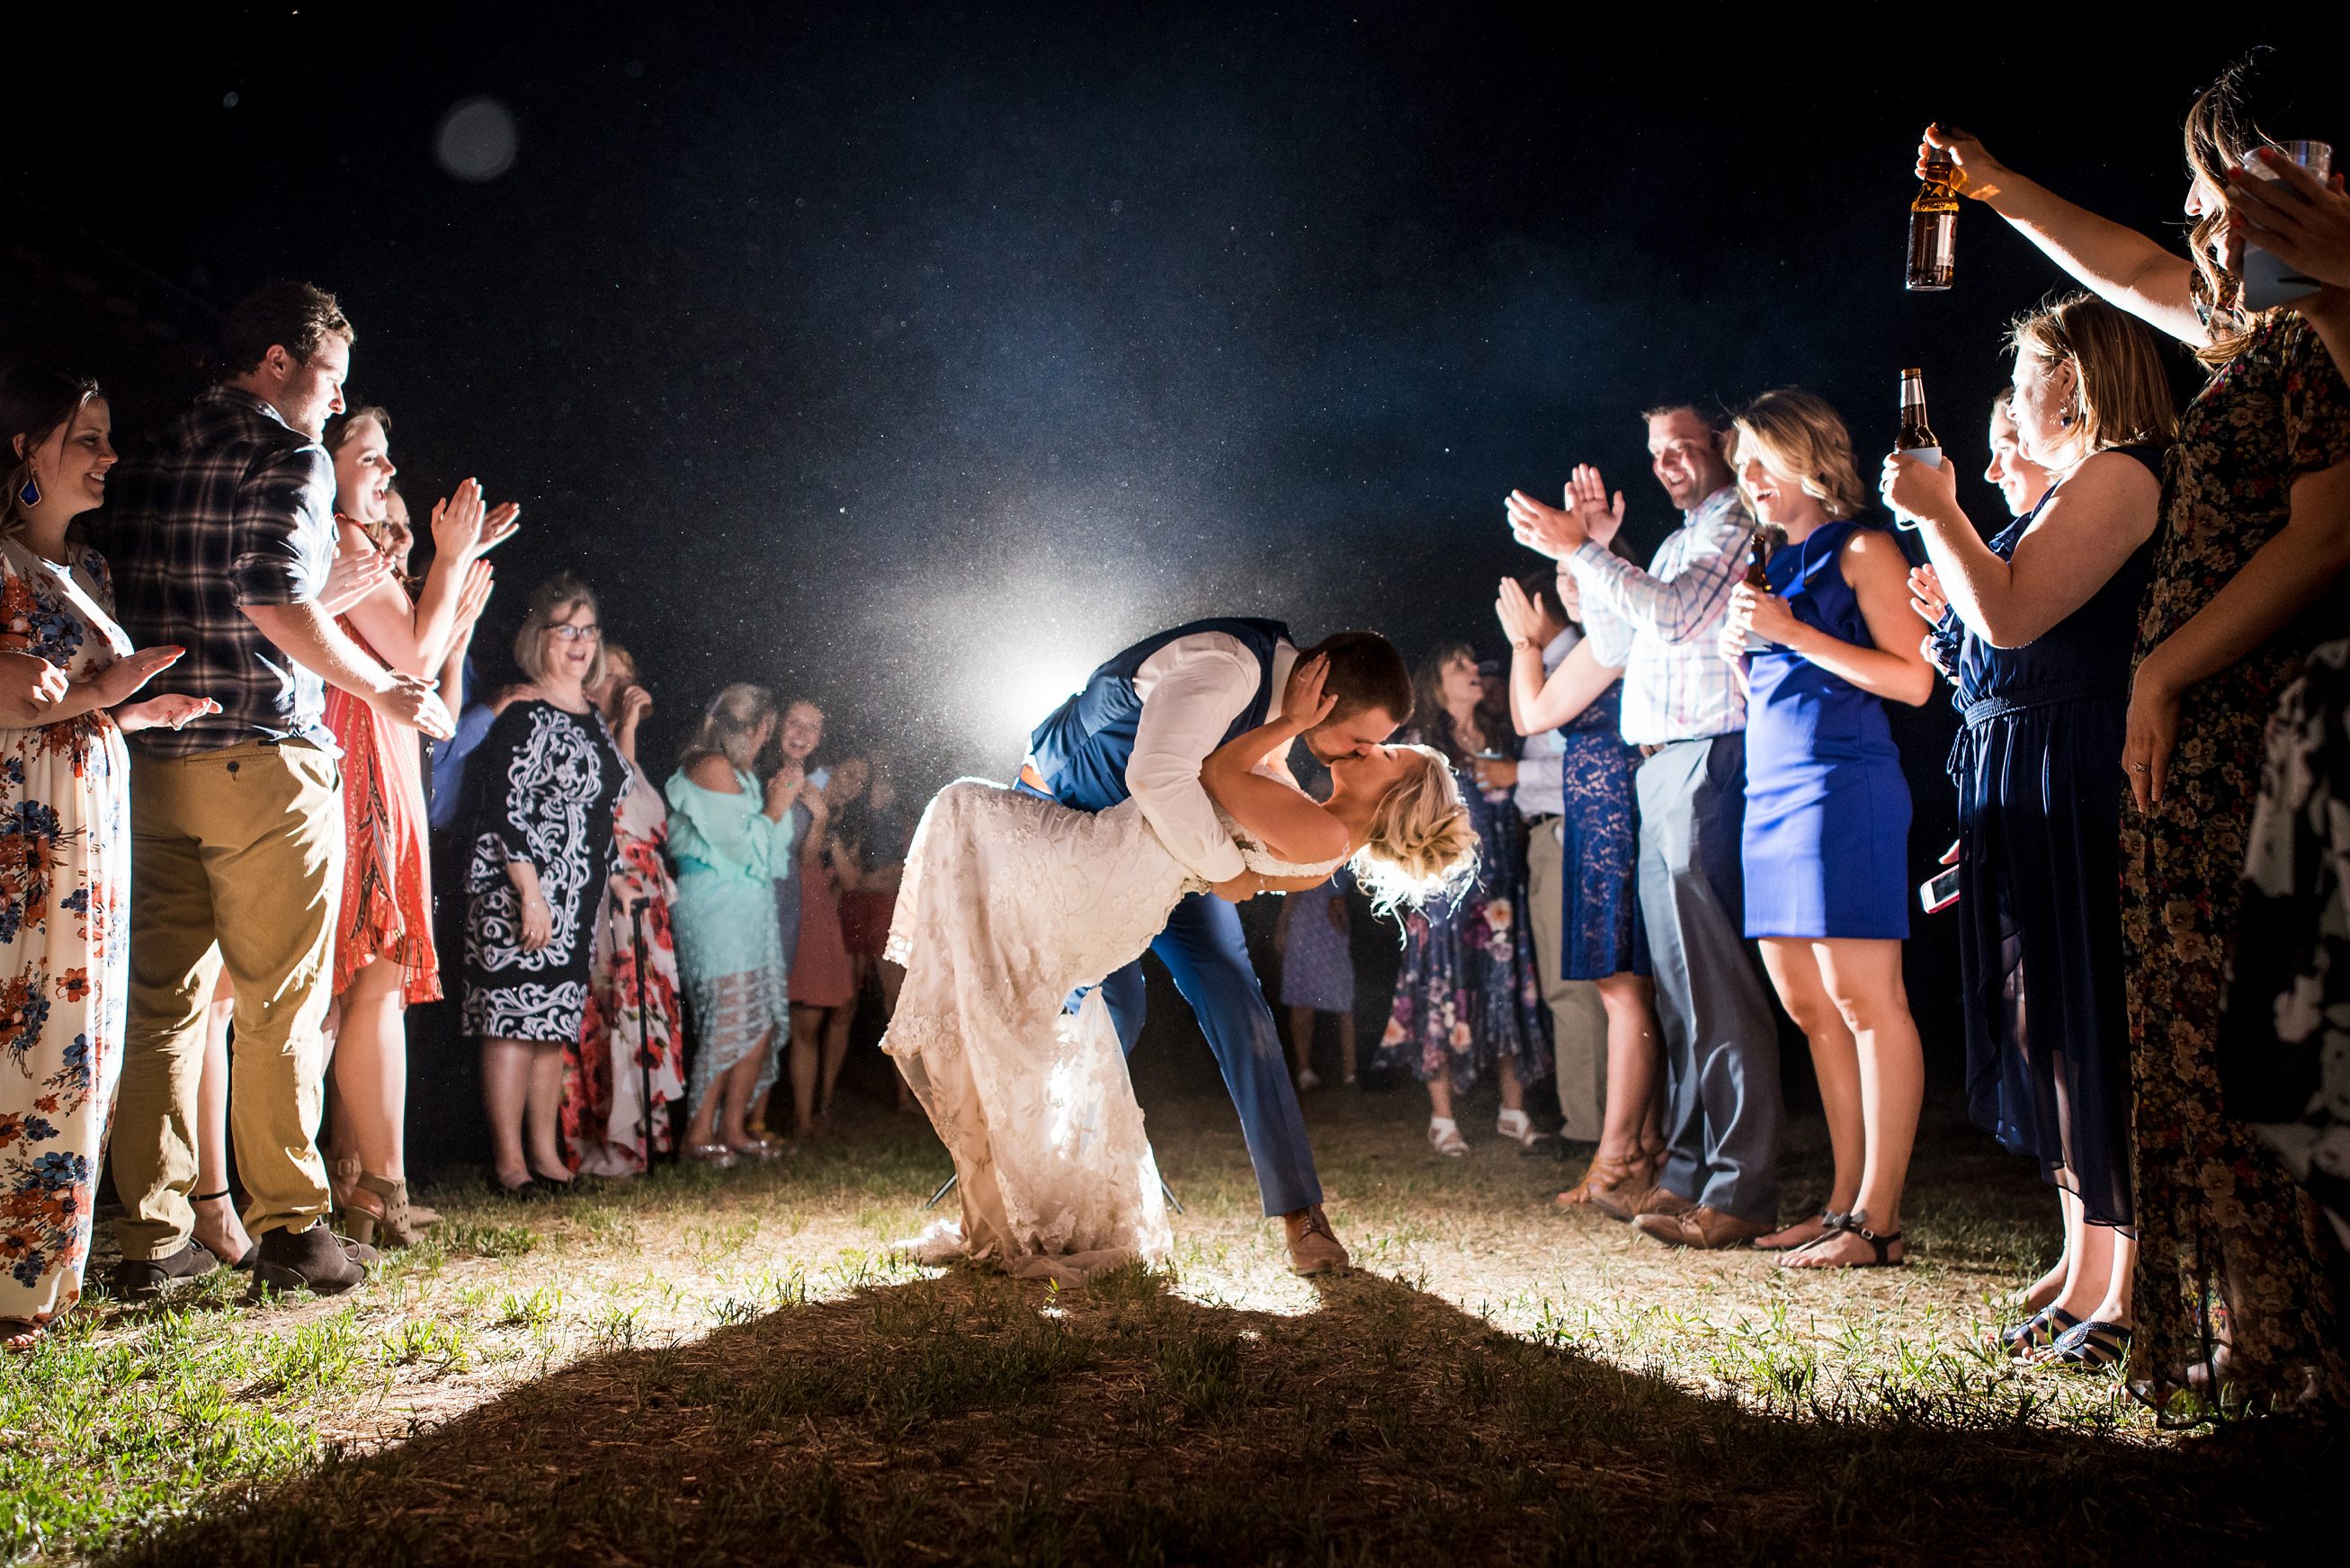  Colorado weddings, Cuchara, Albright Ranch, Colorado Wedding Photographers